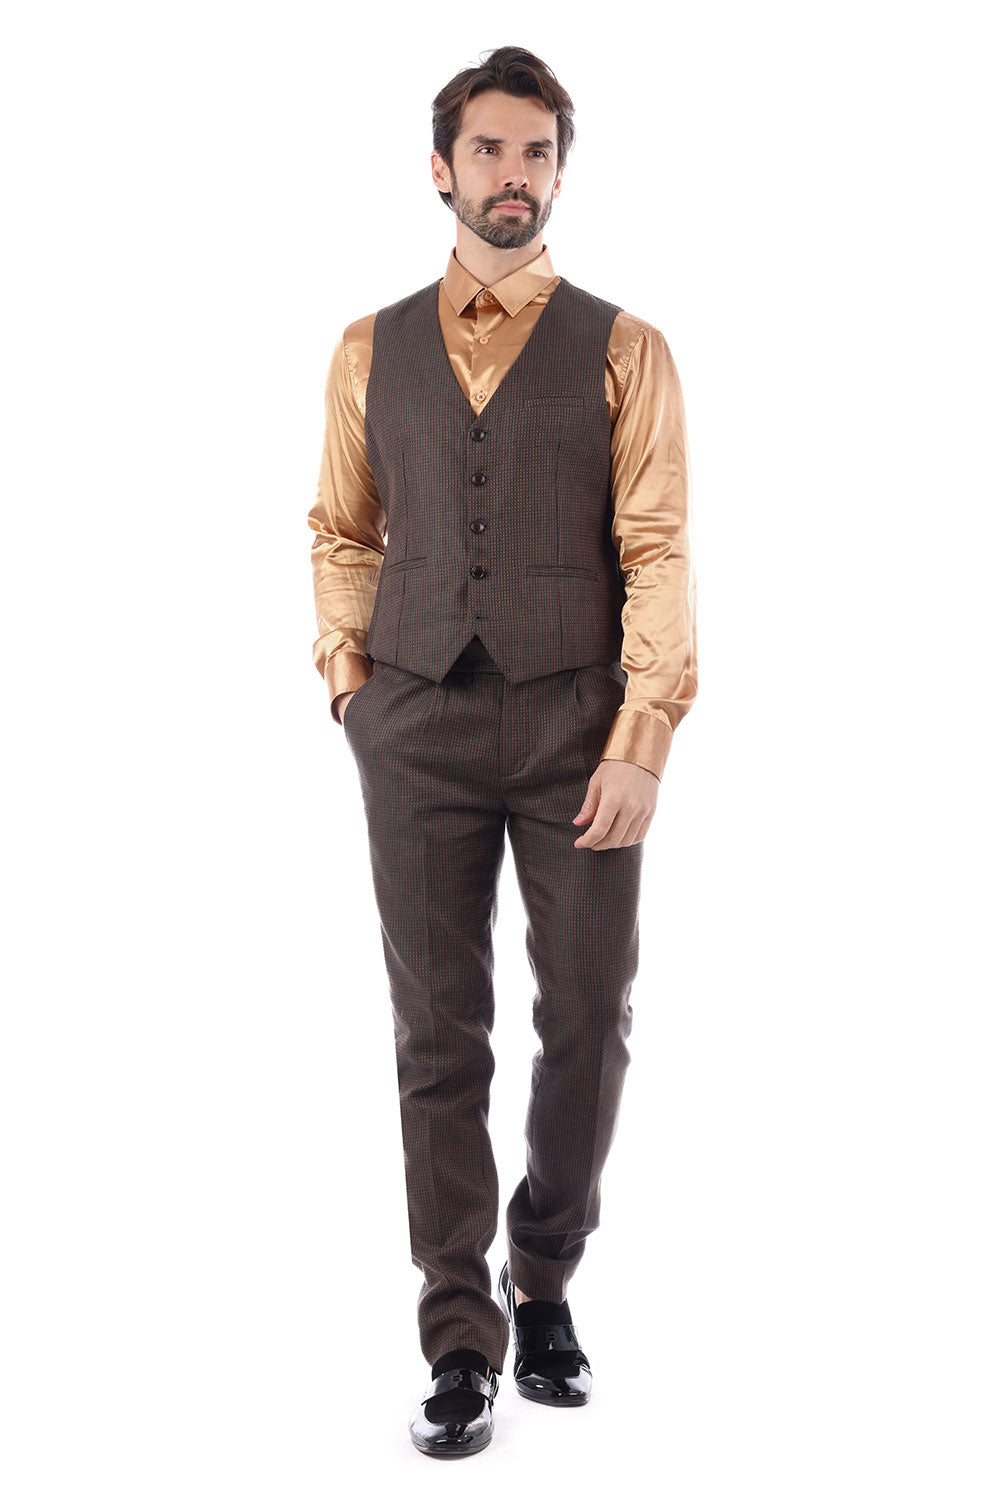 BARABAS Men's Geometric Pattern Linen  Peak Lapel Vest Suit 4SU10 Brown